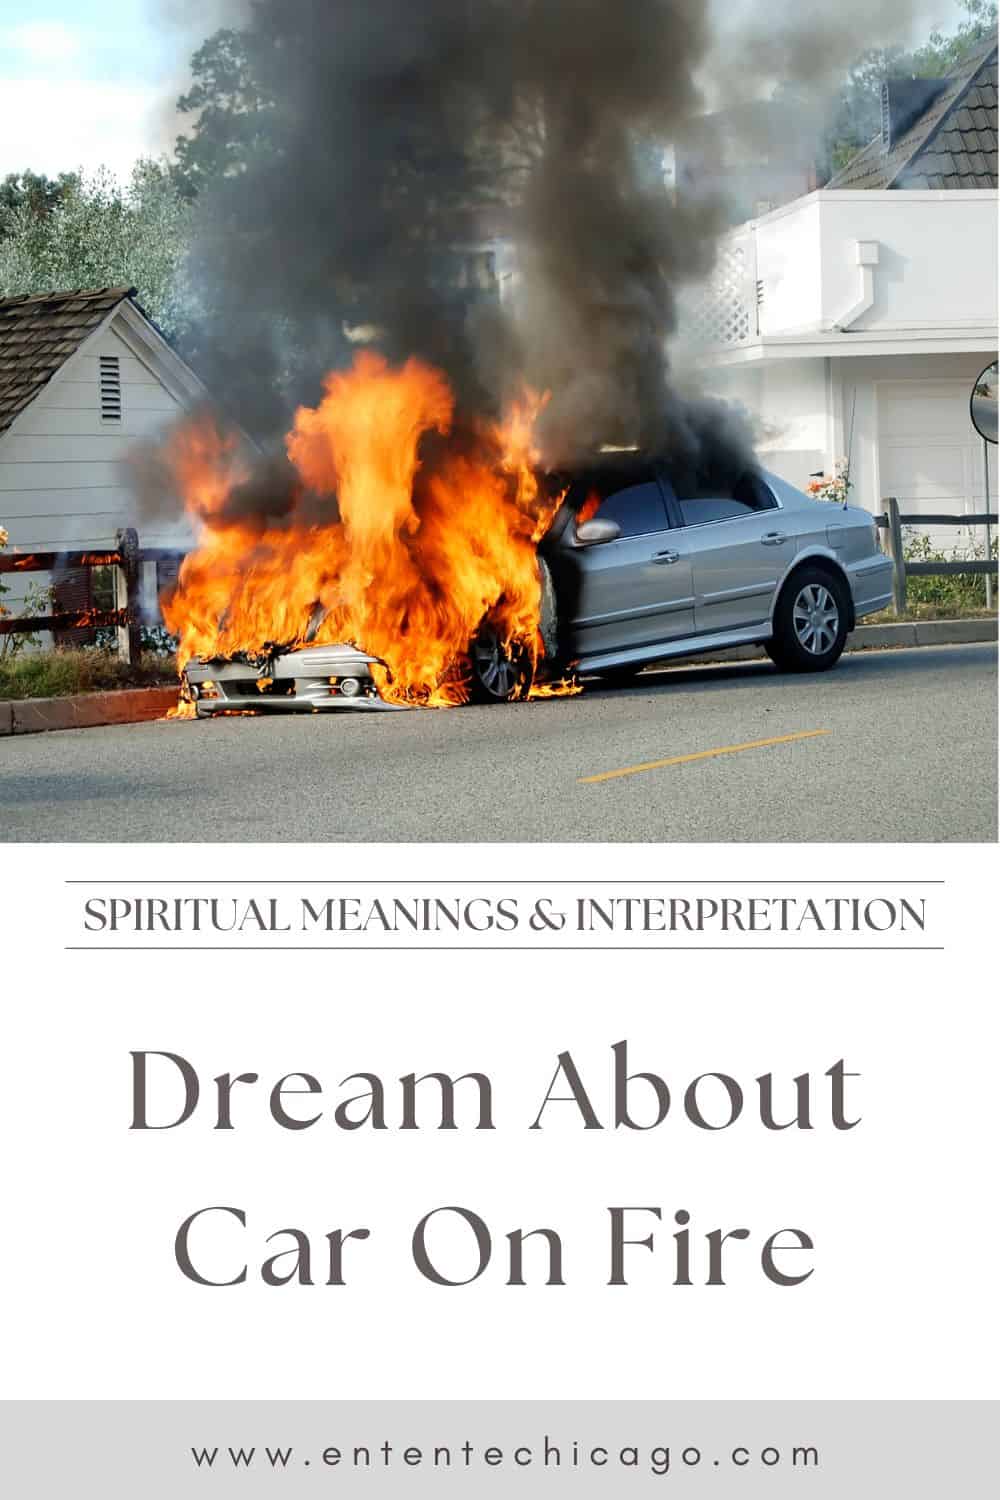  Drøm om at se en bil i brand (heldig fortolkning)